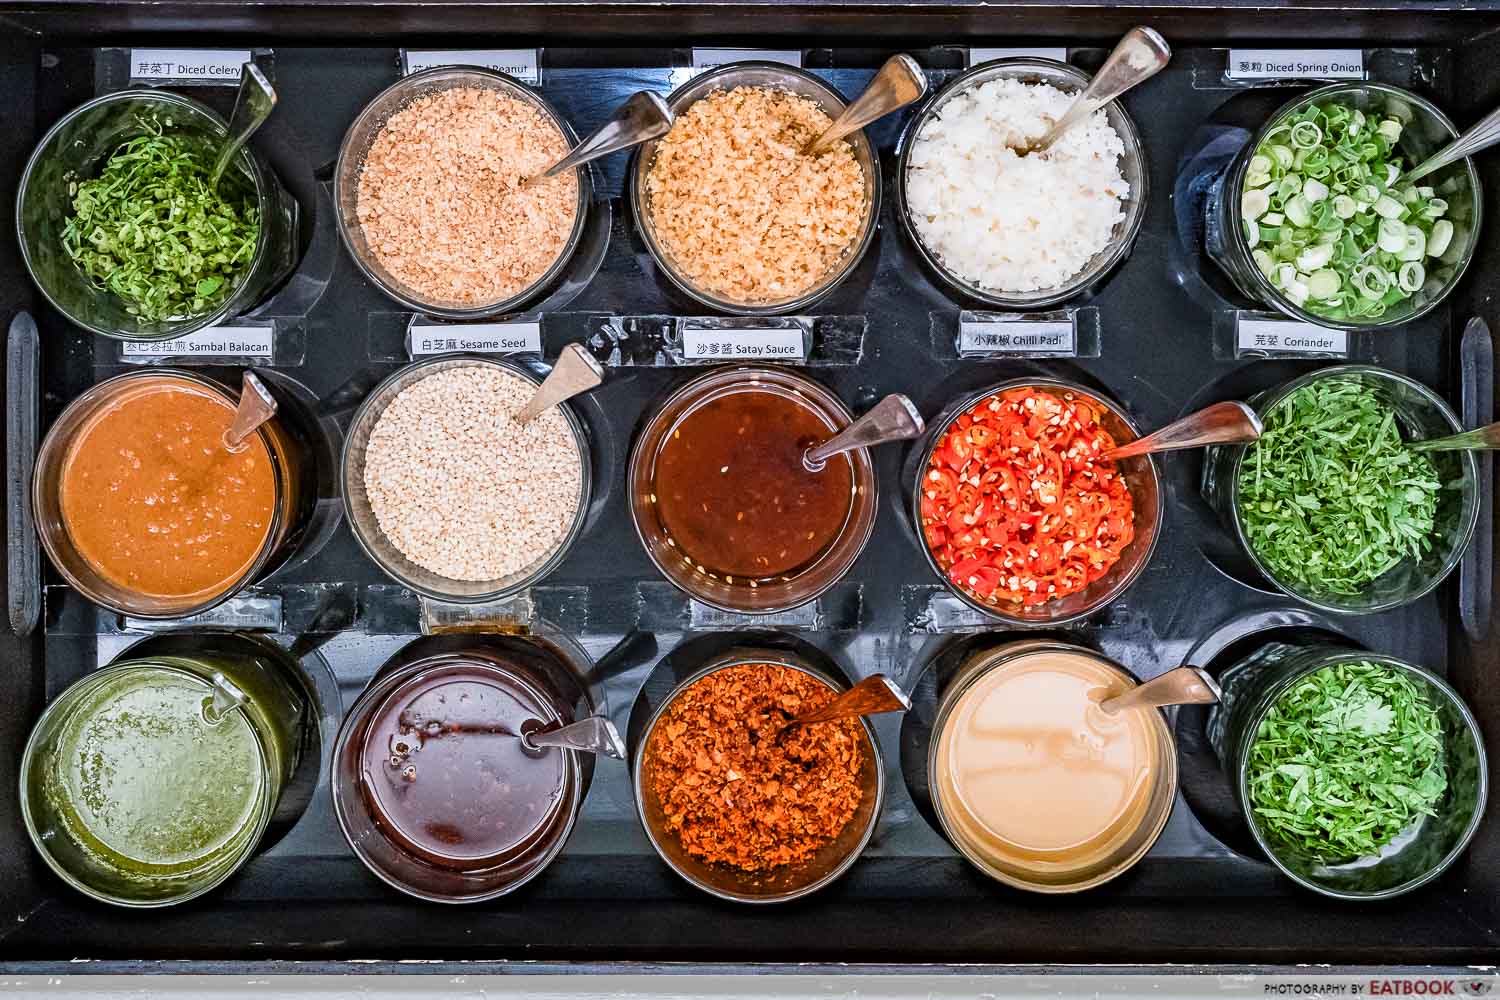 empire hotpot - sauce tray